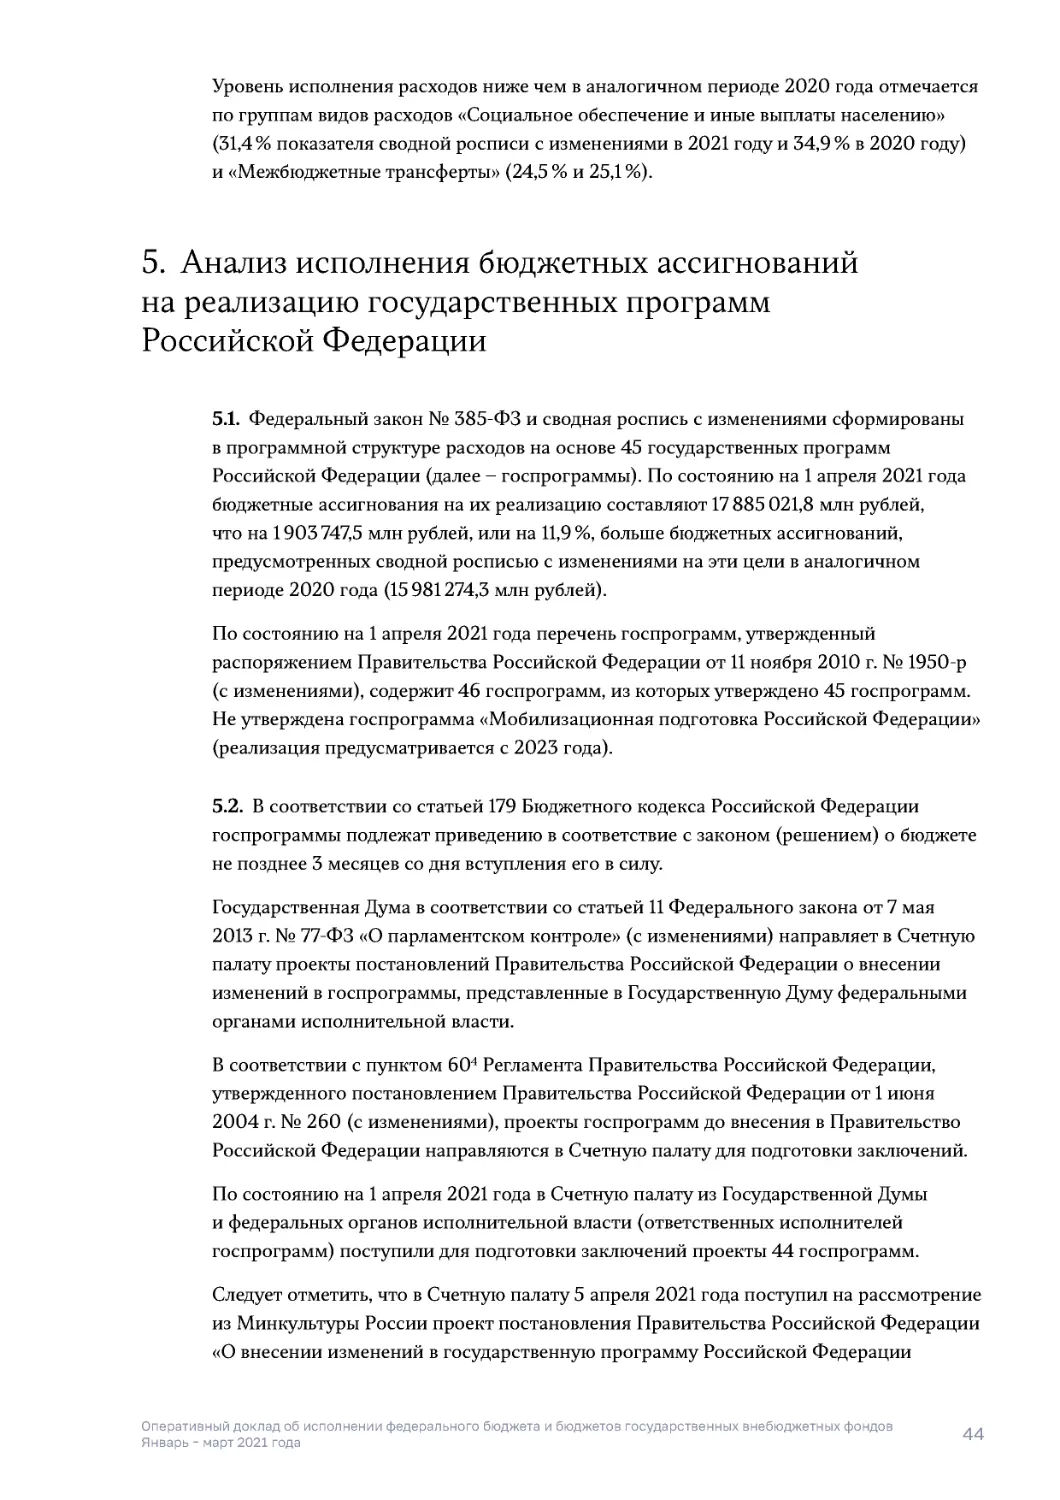 5. Анализ исполнения бюджетных ассигнований на реализацию государственных программ Российской Федерации